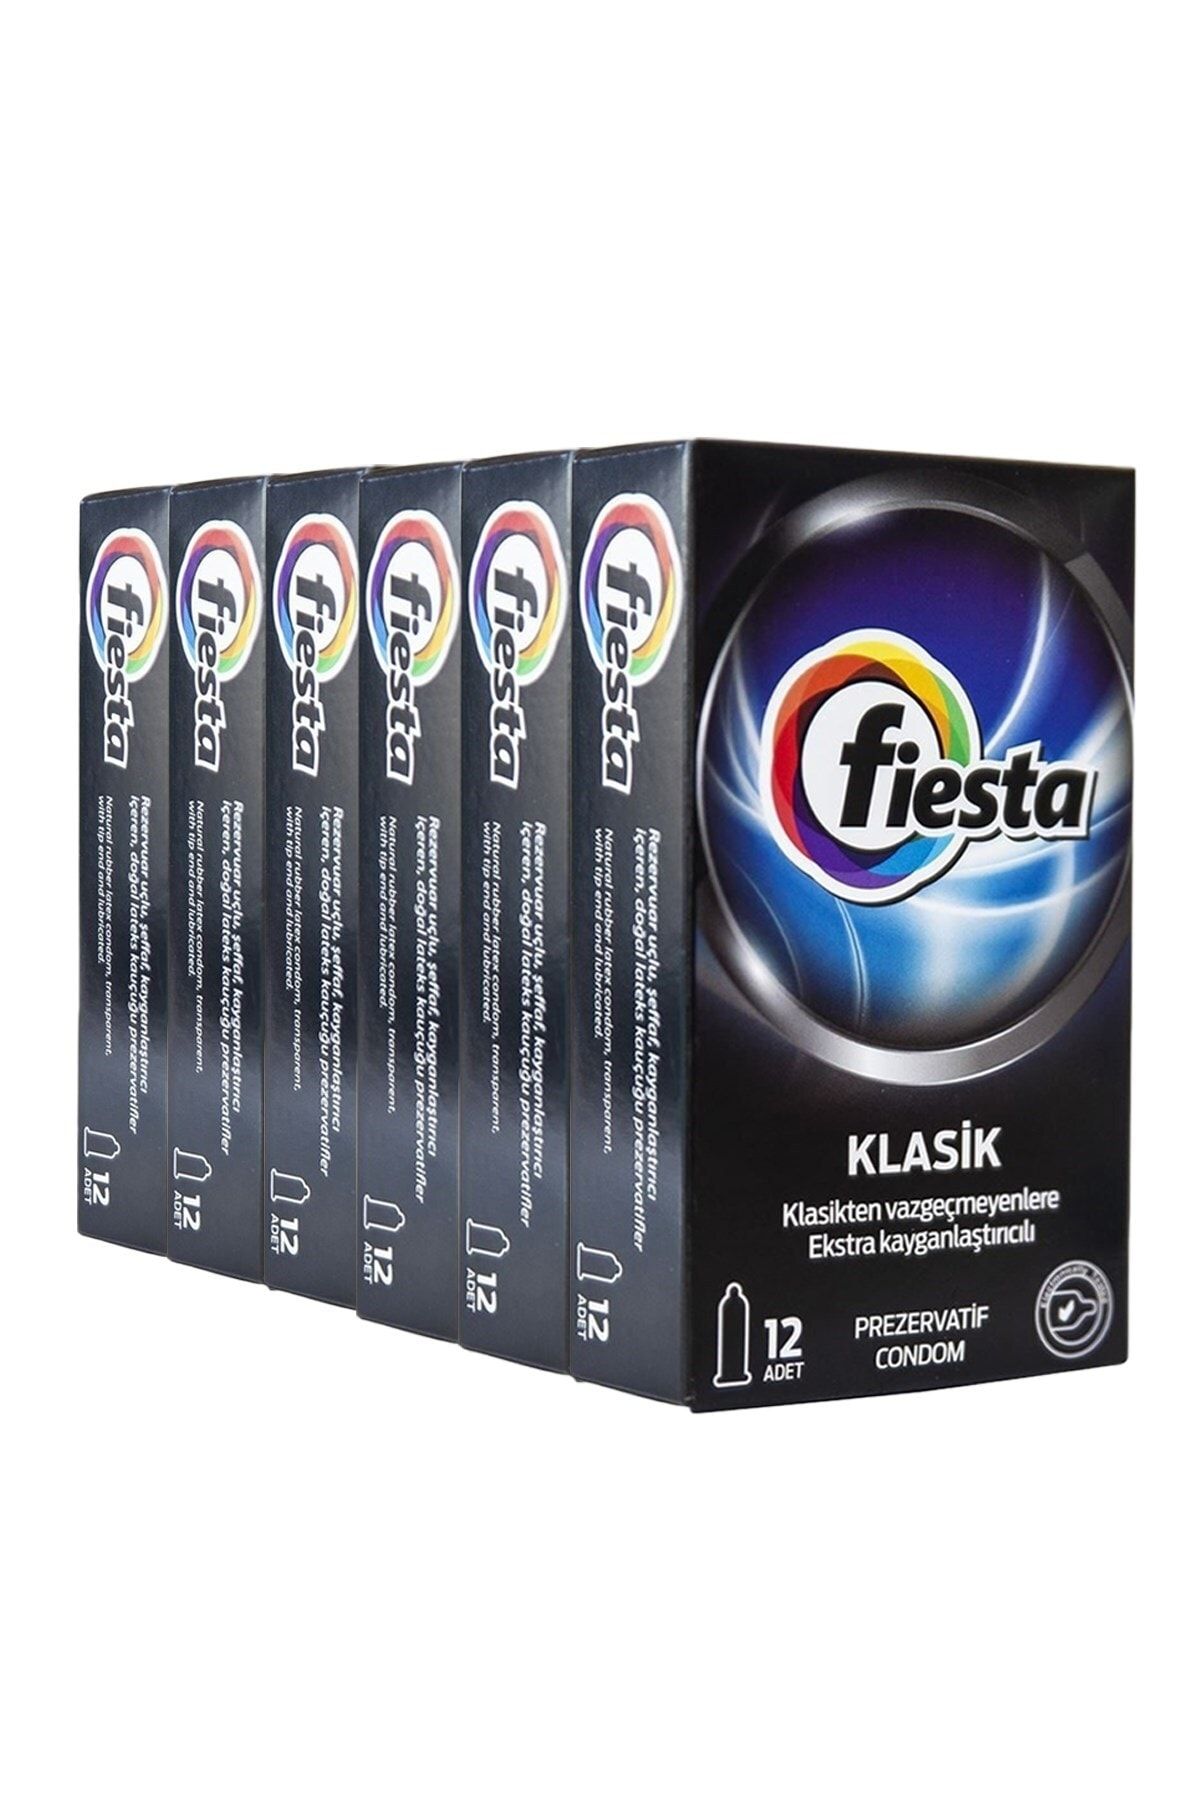 Fiesta Klasik Prezervatif 6'lı Ekonomik Paket